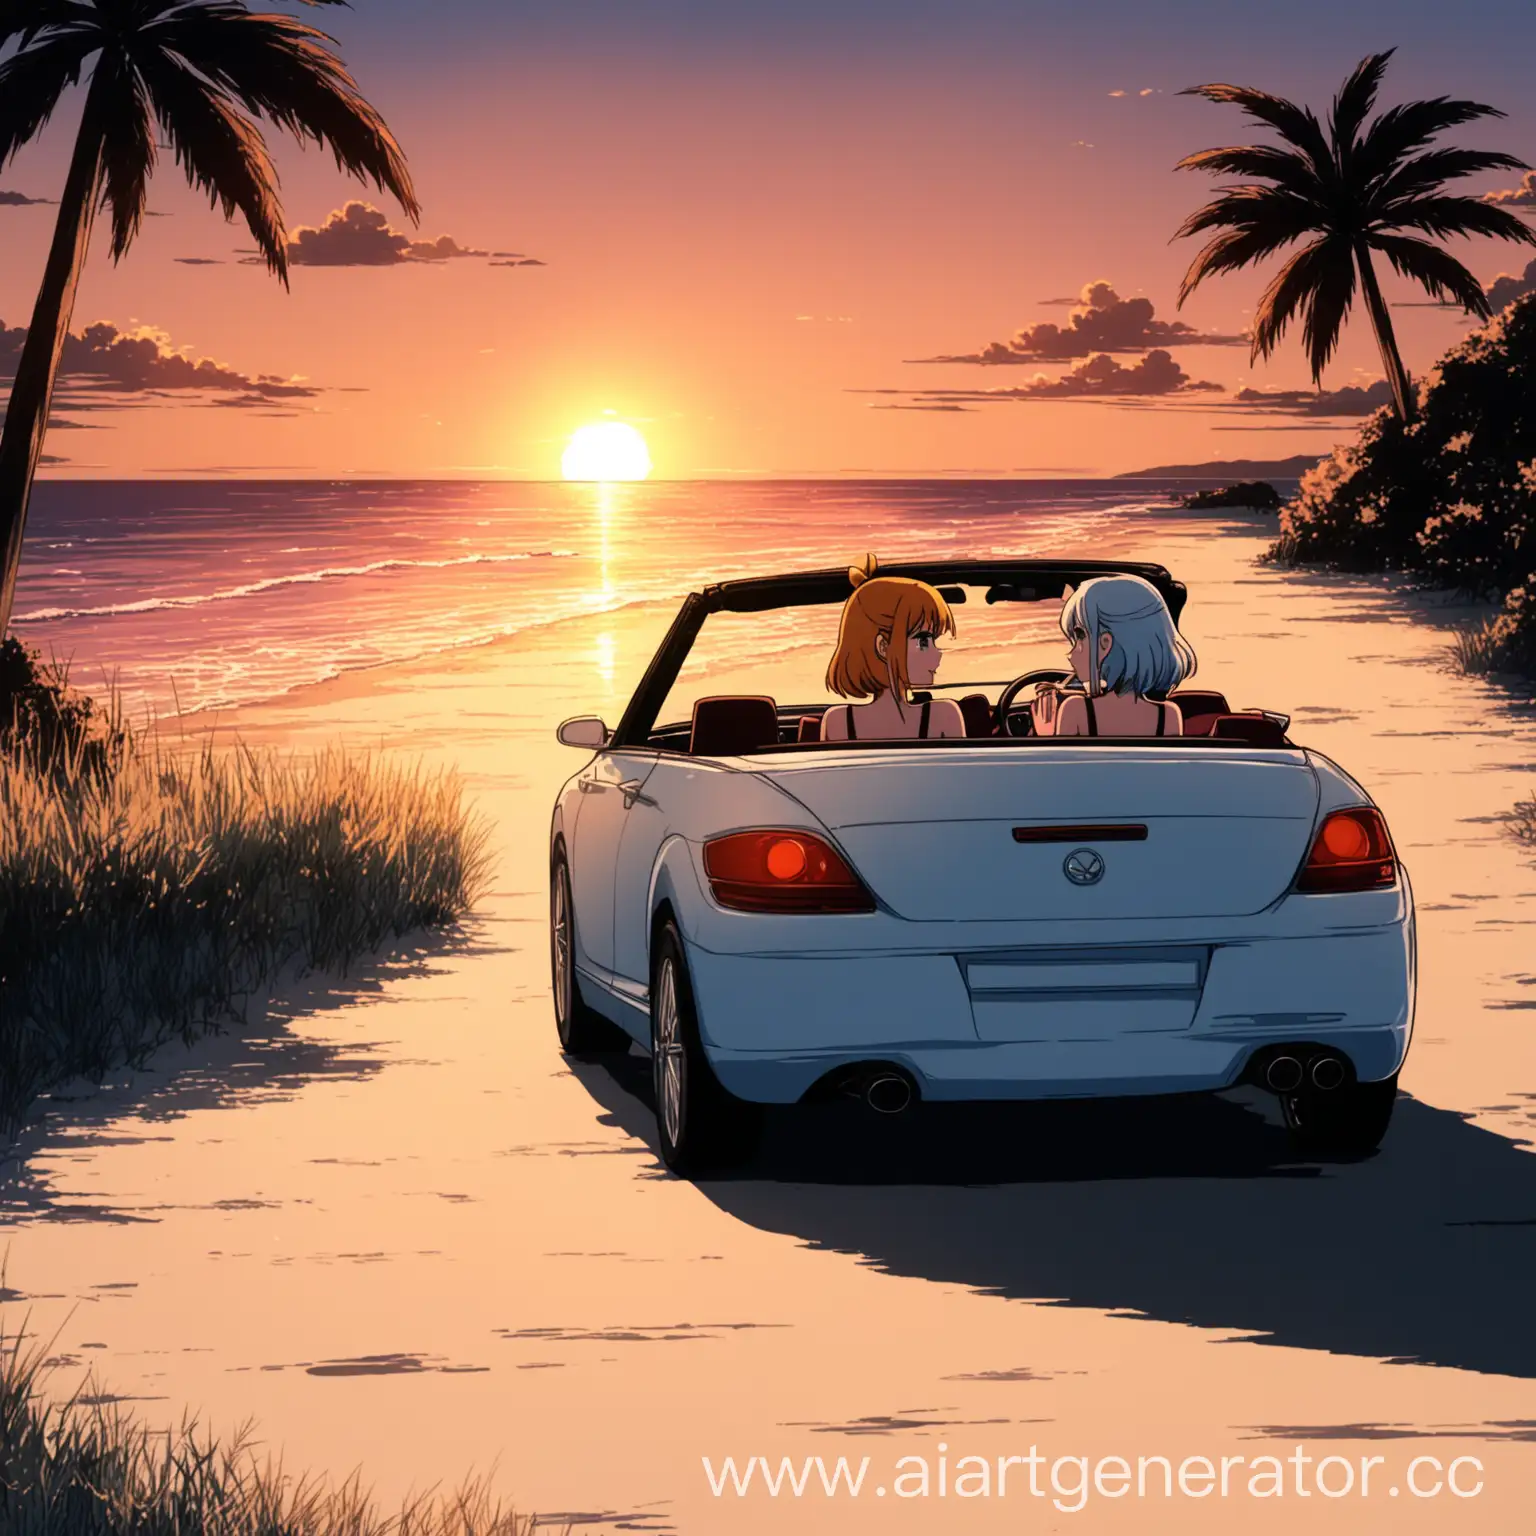 Две девушки в кабриолете возле пляжа во время заката в хорошем качестве в аниме стиле